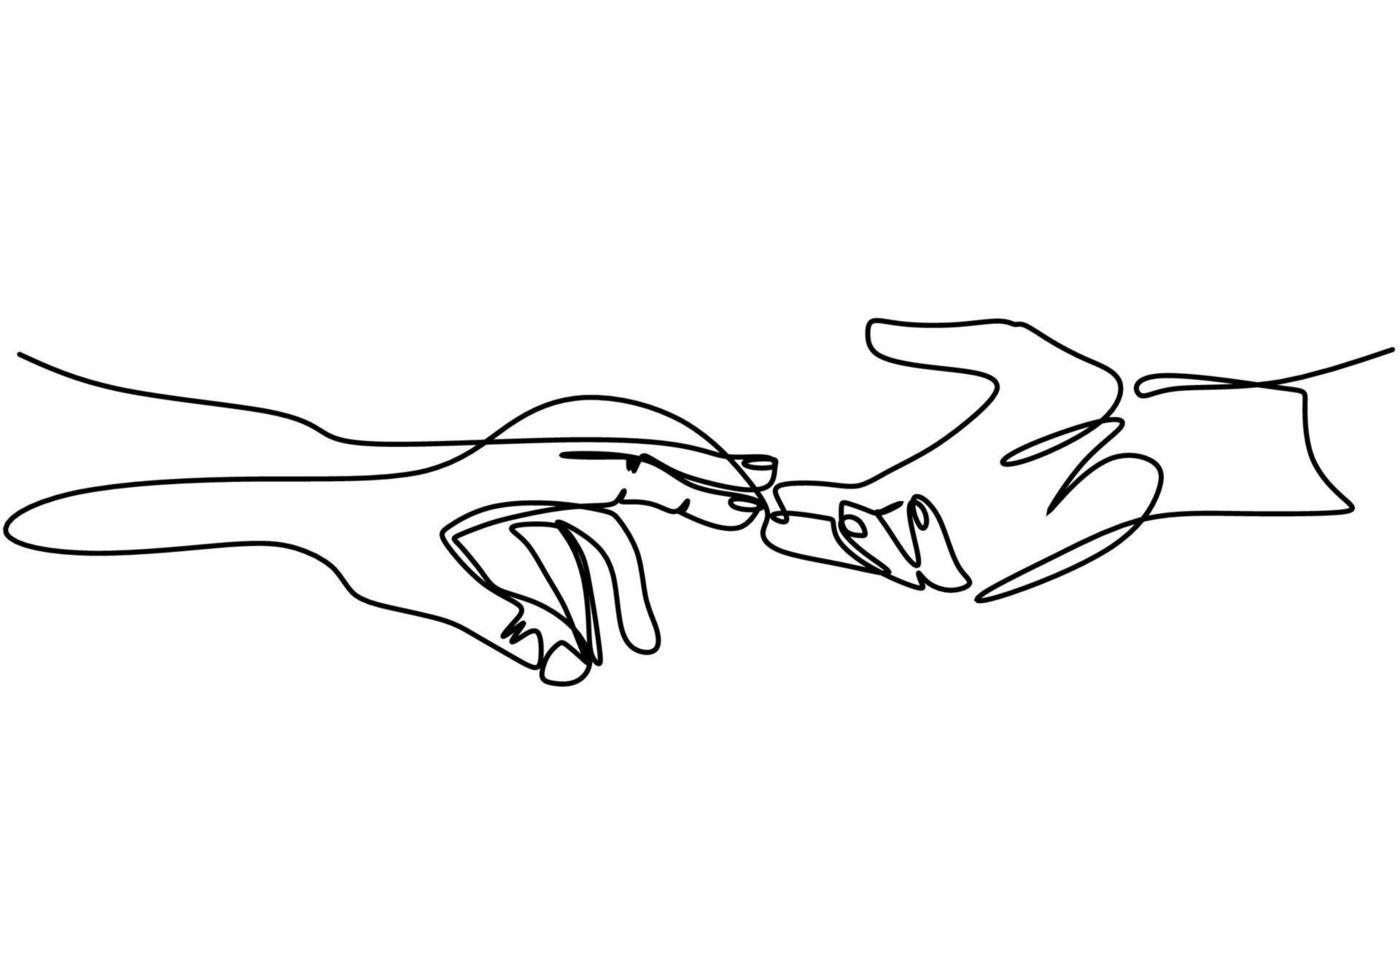 kontinuerlig en enda linje man och kvinna händer som håller ihop. uttryck för kärlek med hand i hand varandra isolera på vit bakgrund. romantiskt koncept minimalistisk stil. vektor illustration